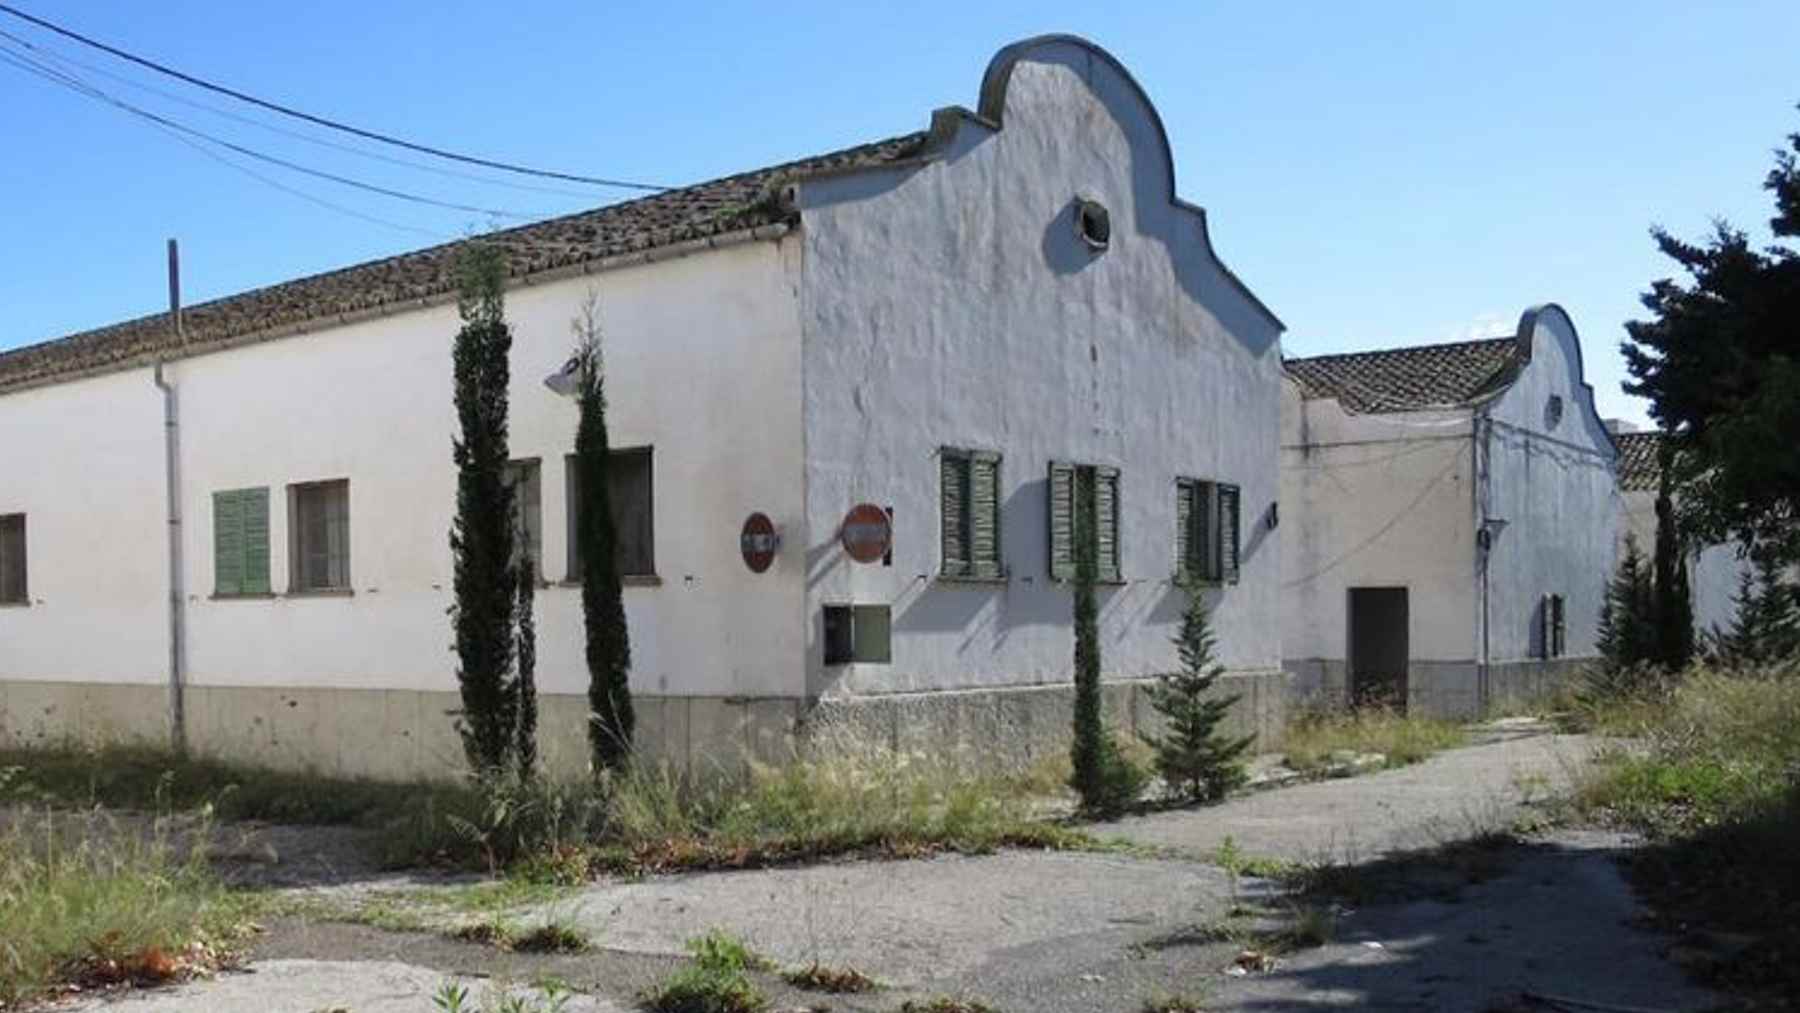 Imagen del antiguo cuartel de Son Busquets en Palma propiedad del Ministerio de Defensa.